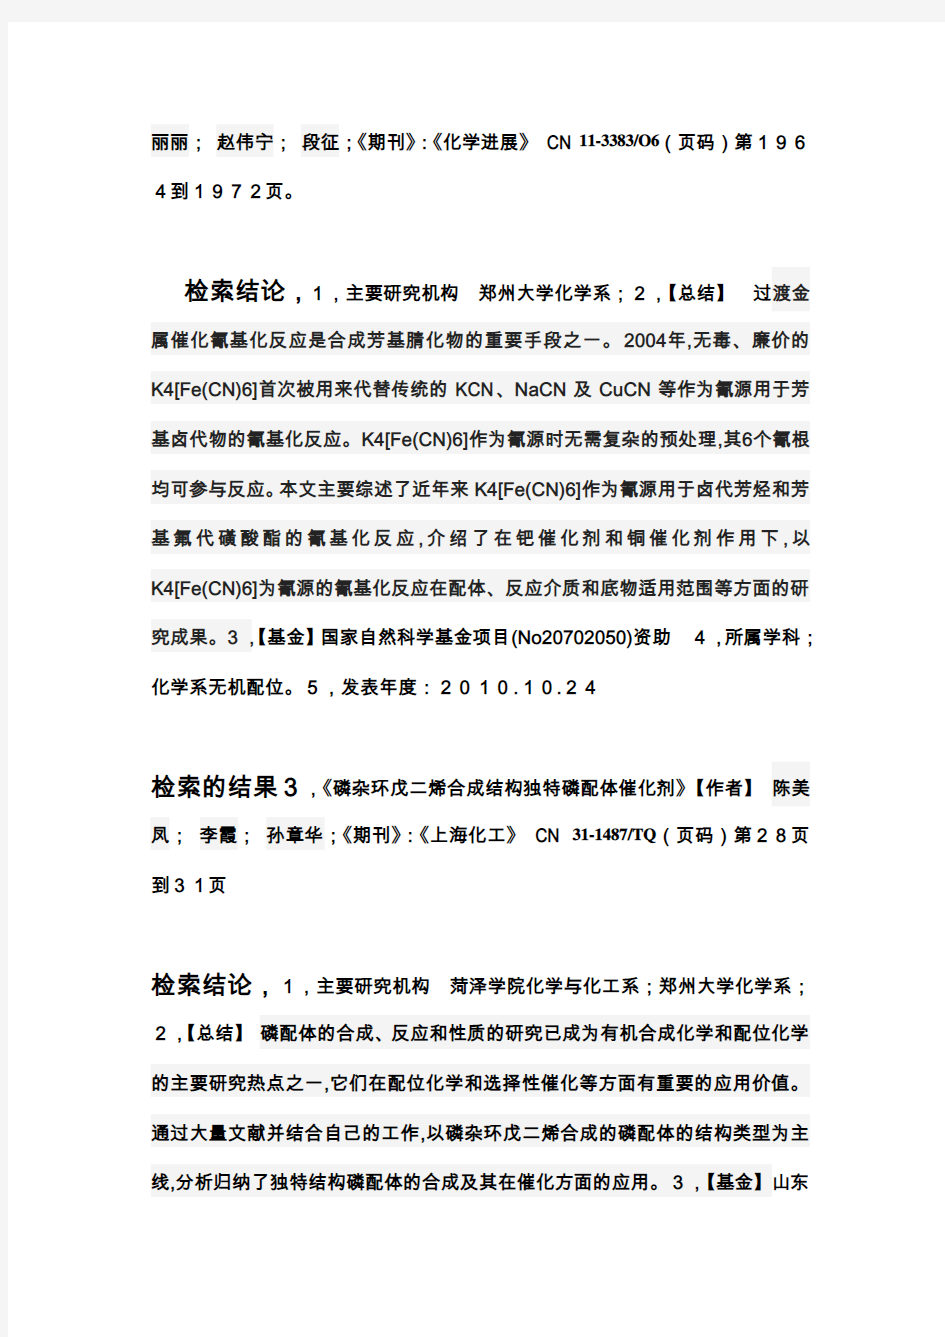 中国知网文件检索报告